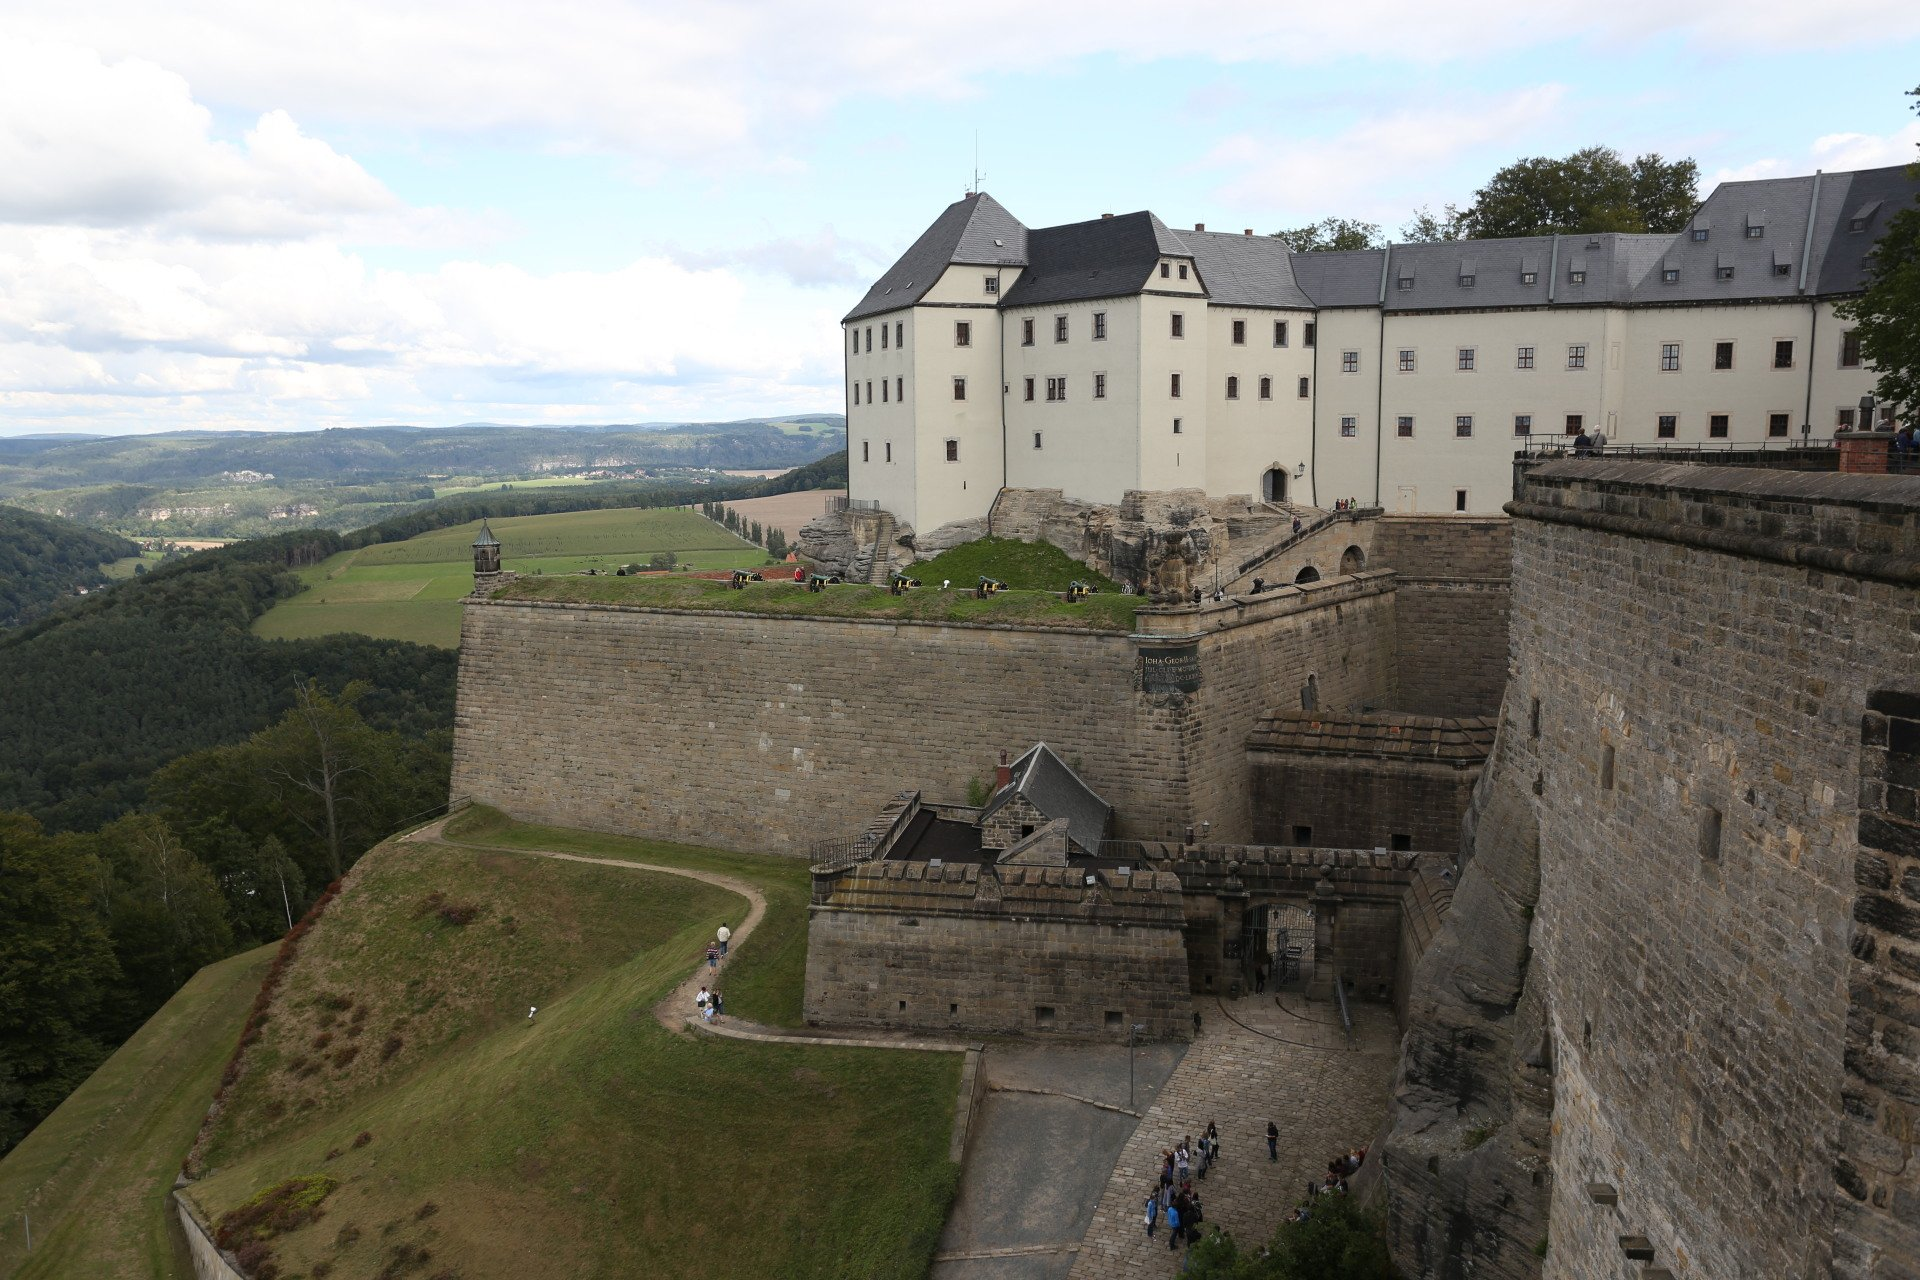 Wandern in der Sächsischen Schweiz/ Elbsandsteingebirge/ Festung Königstein/ Landpension in Rosenthal-Bielatal